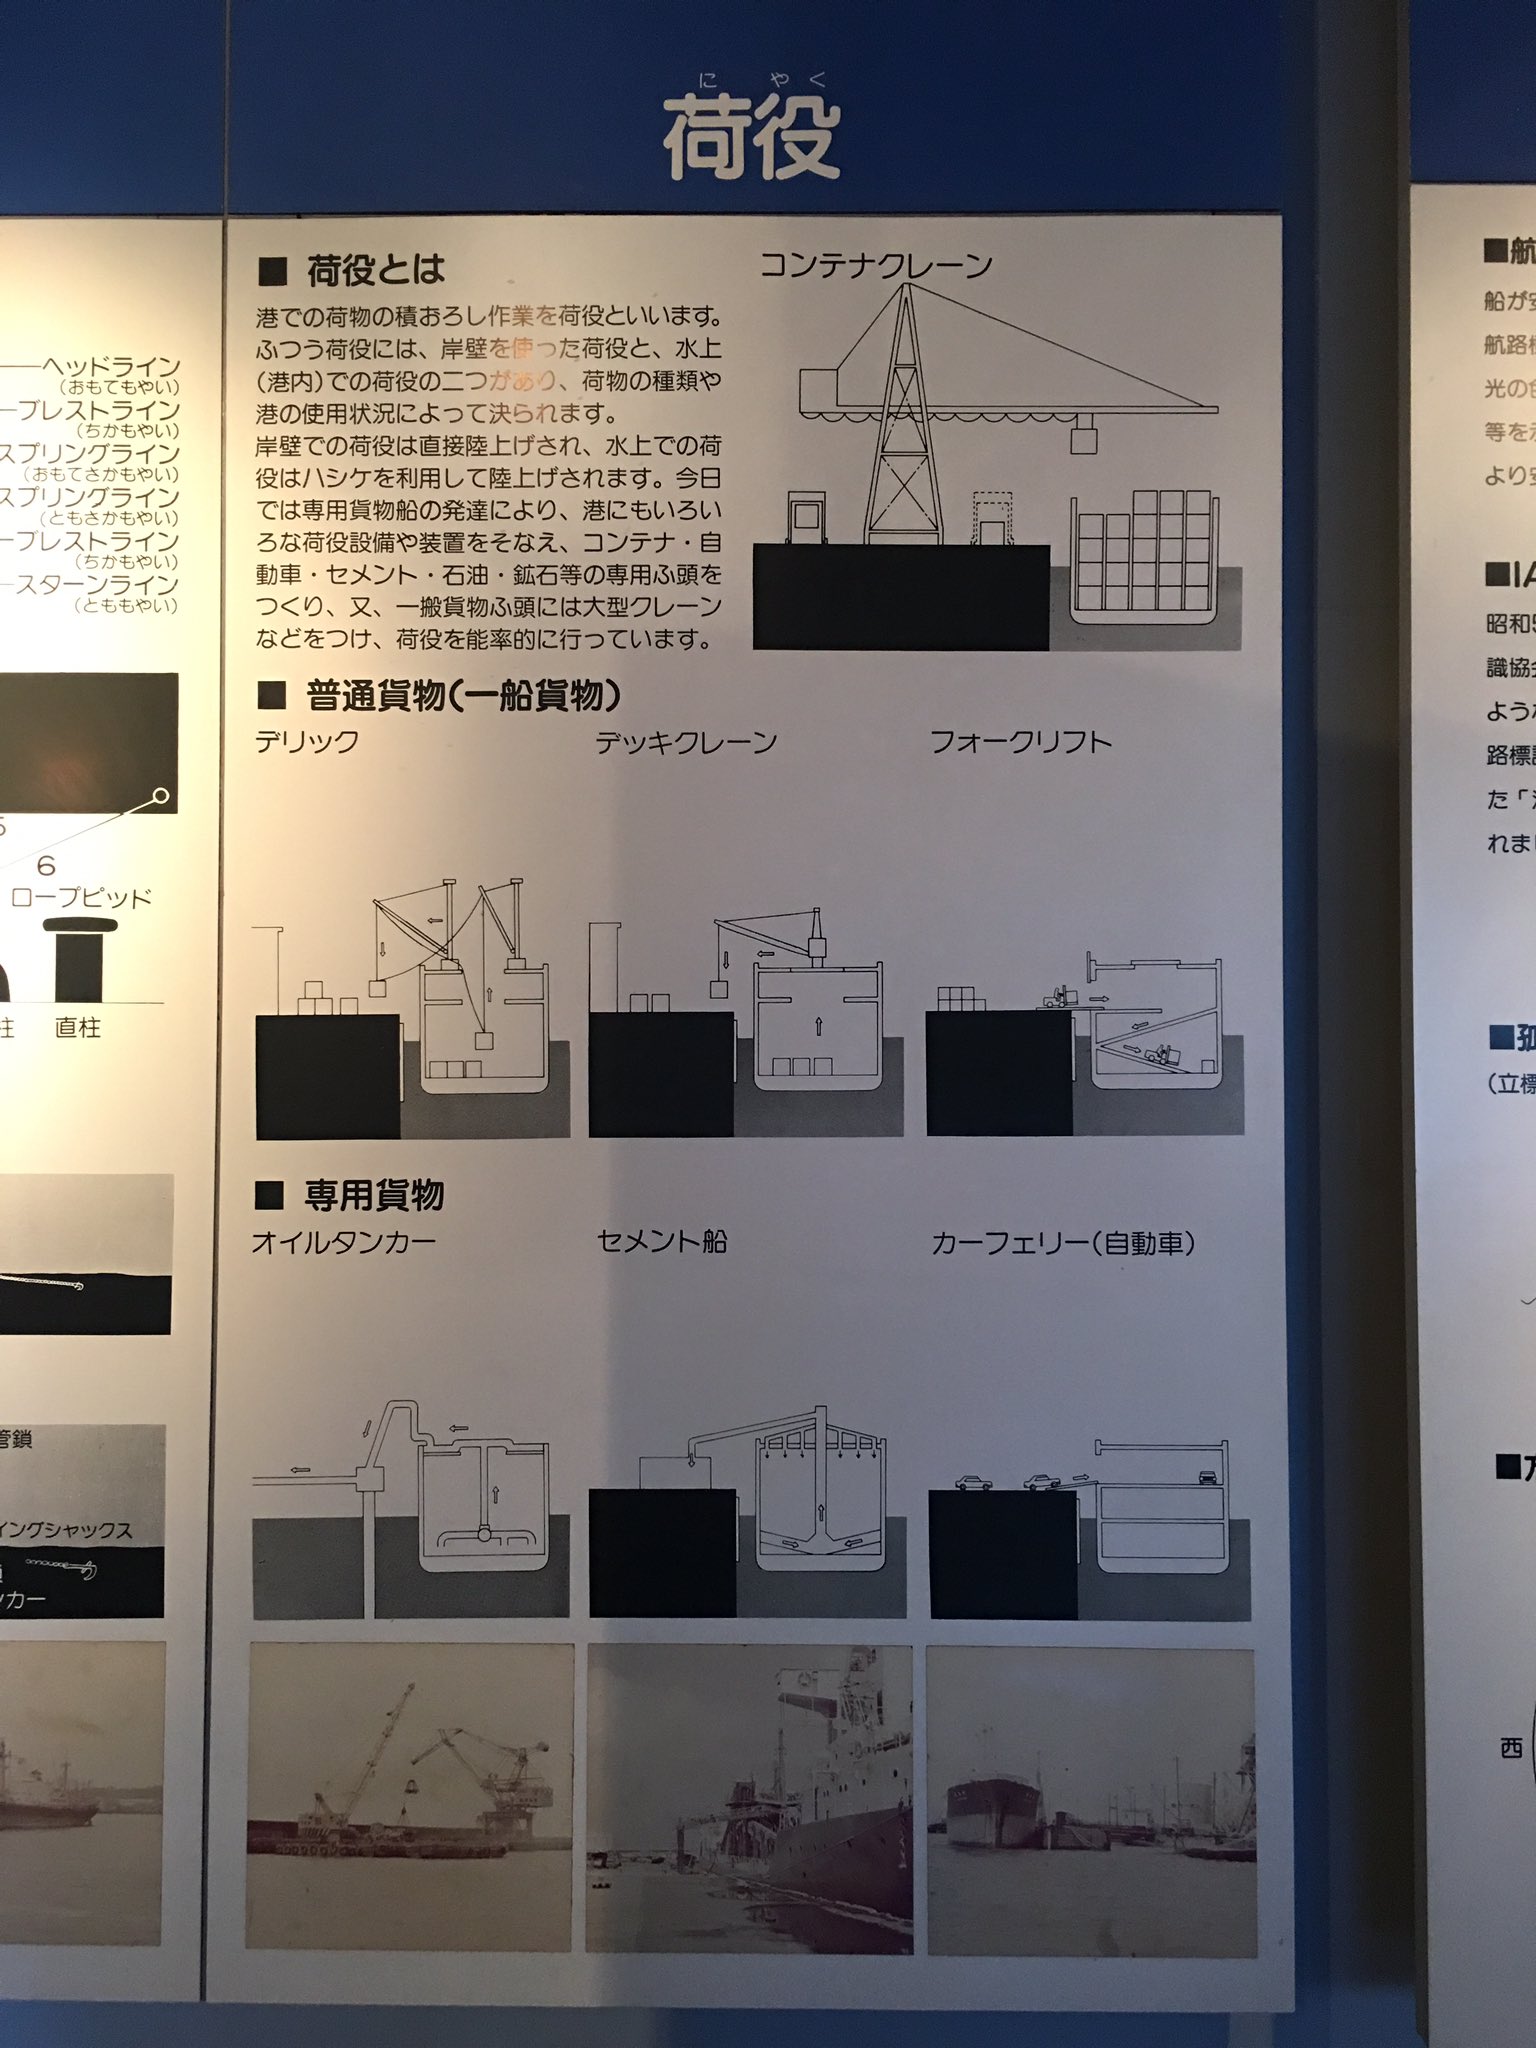 在華坊 佐渡汽船ターミナルの新潟県港湾資料室 なかなか楽しいけど 昭和56年に作ってそのまま感があるので 完全にコンテナ船前史である T Co Ekfrt7to4e Twitter